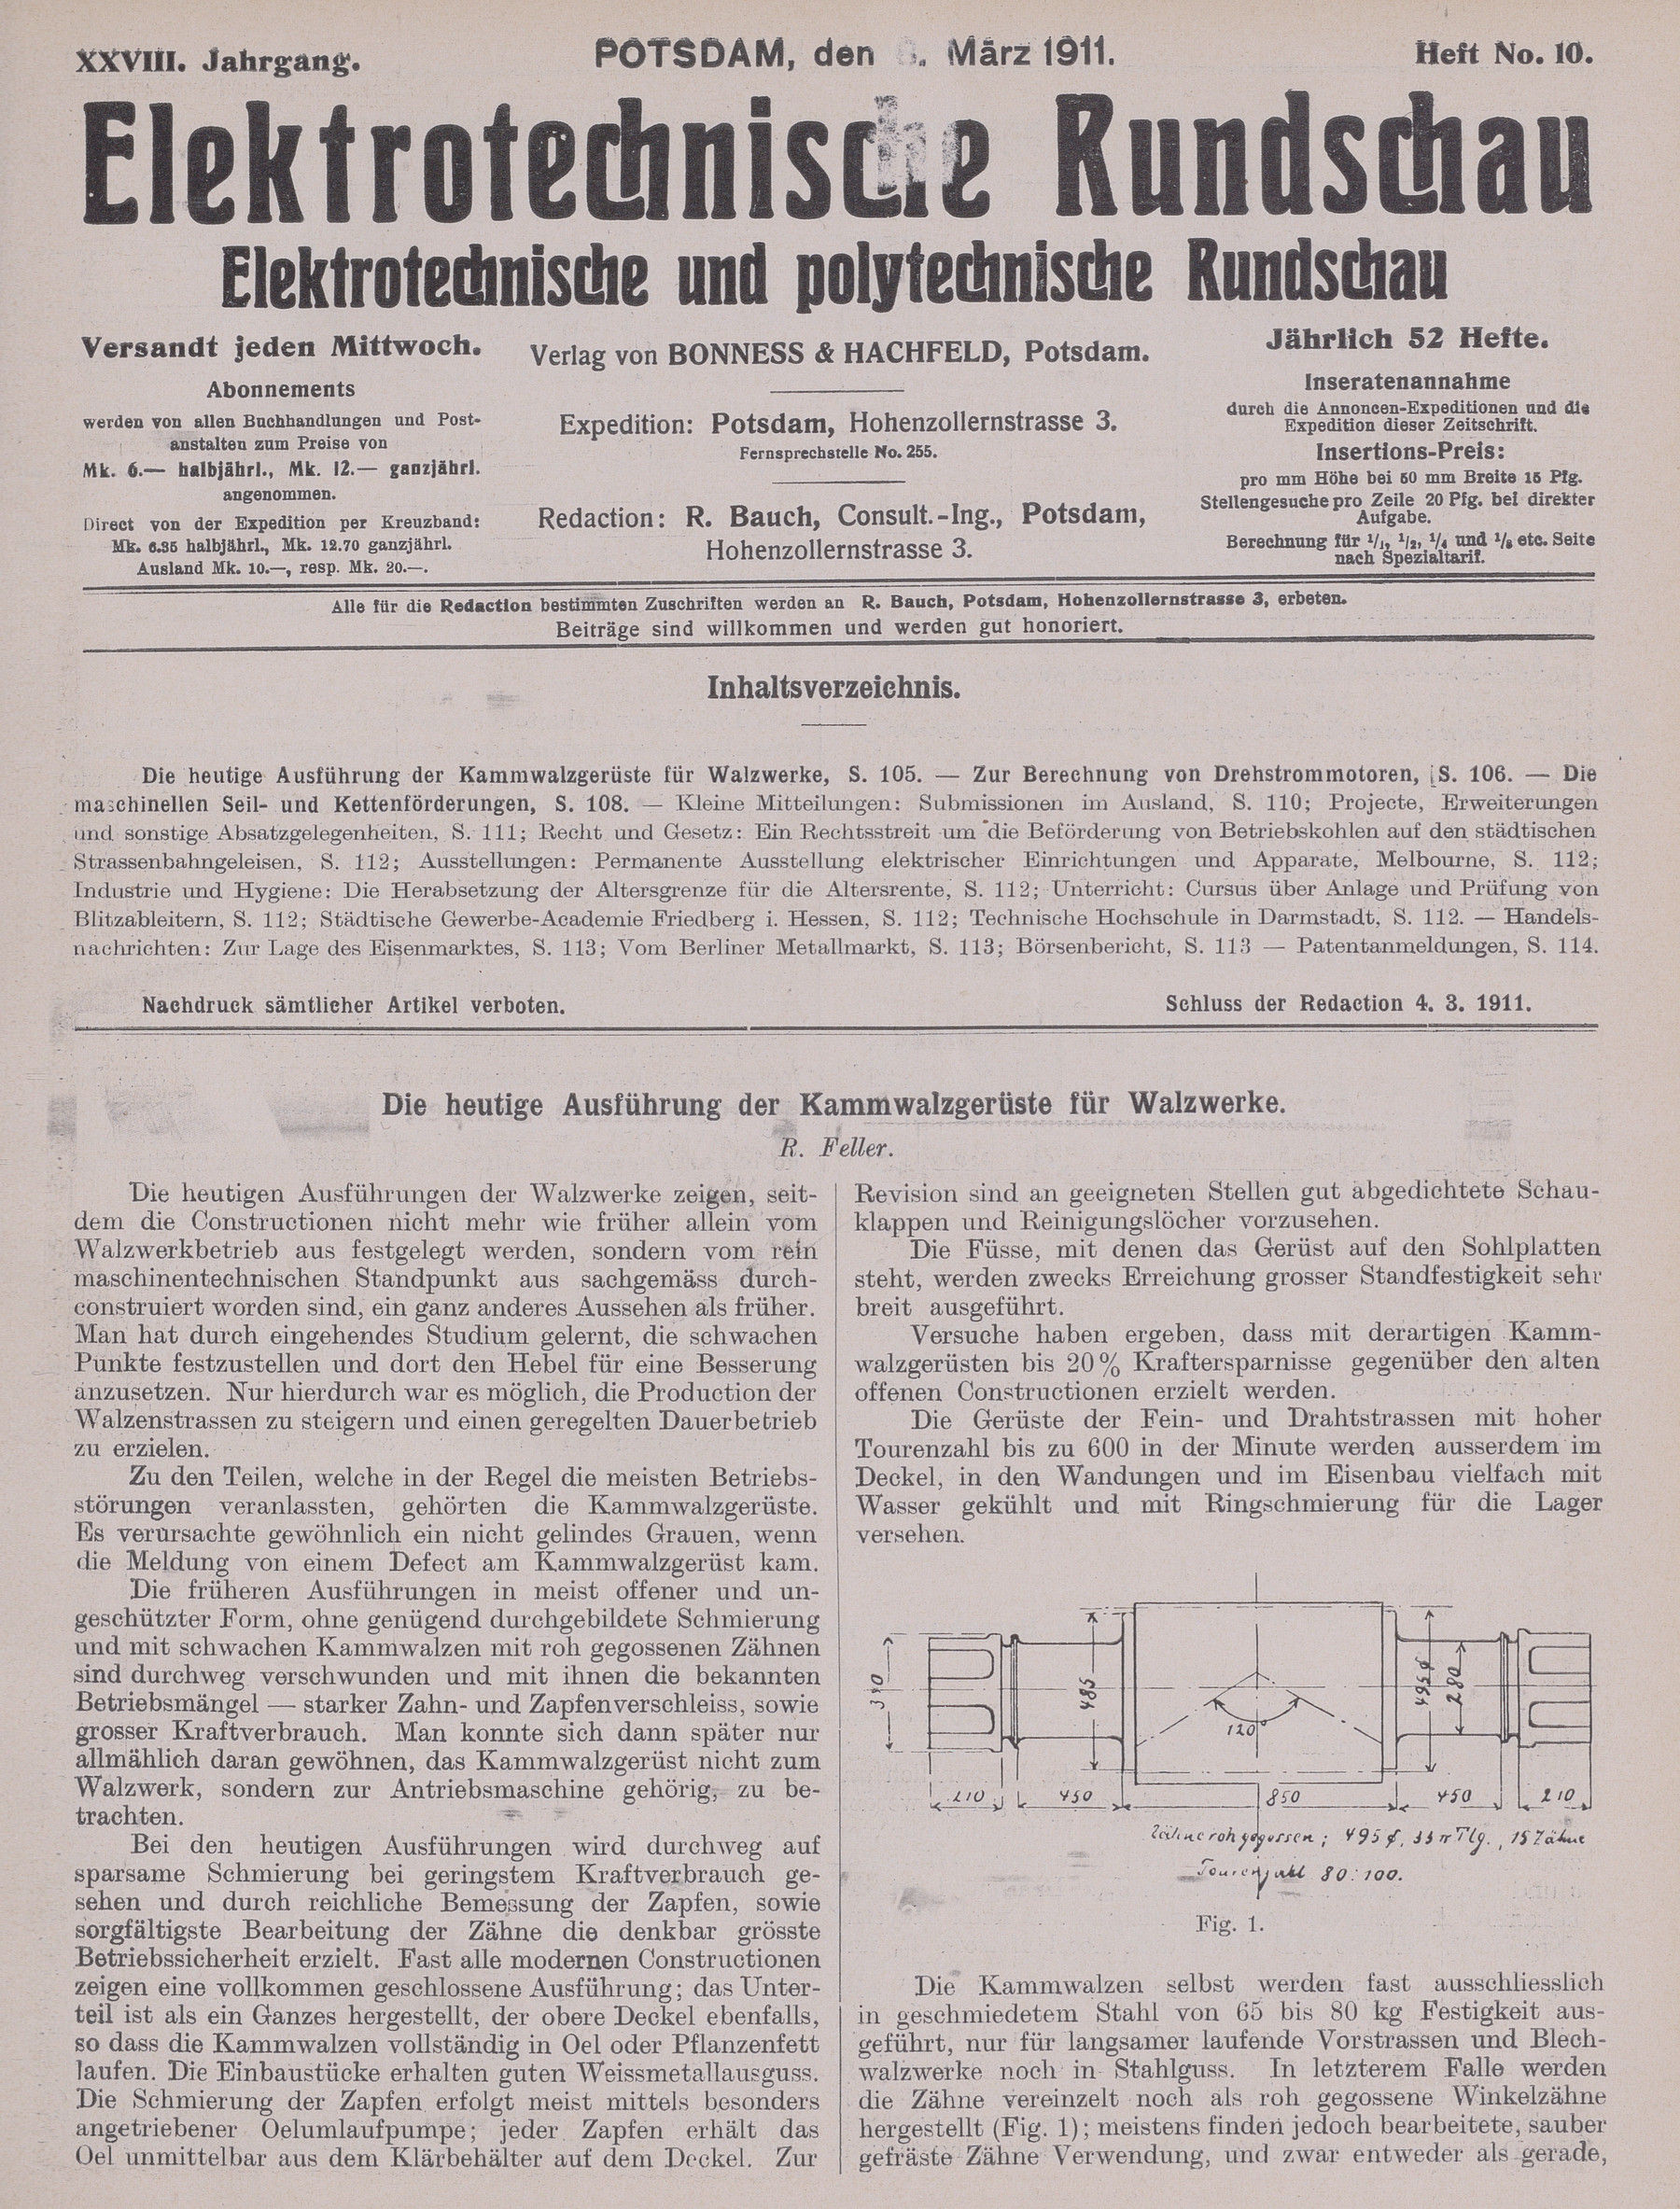 Elektrotechnische Rundschau : Elektrotechnische und polytechnische Rundschau, XXVIII. Jahrgang, Heft No. 10